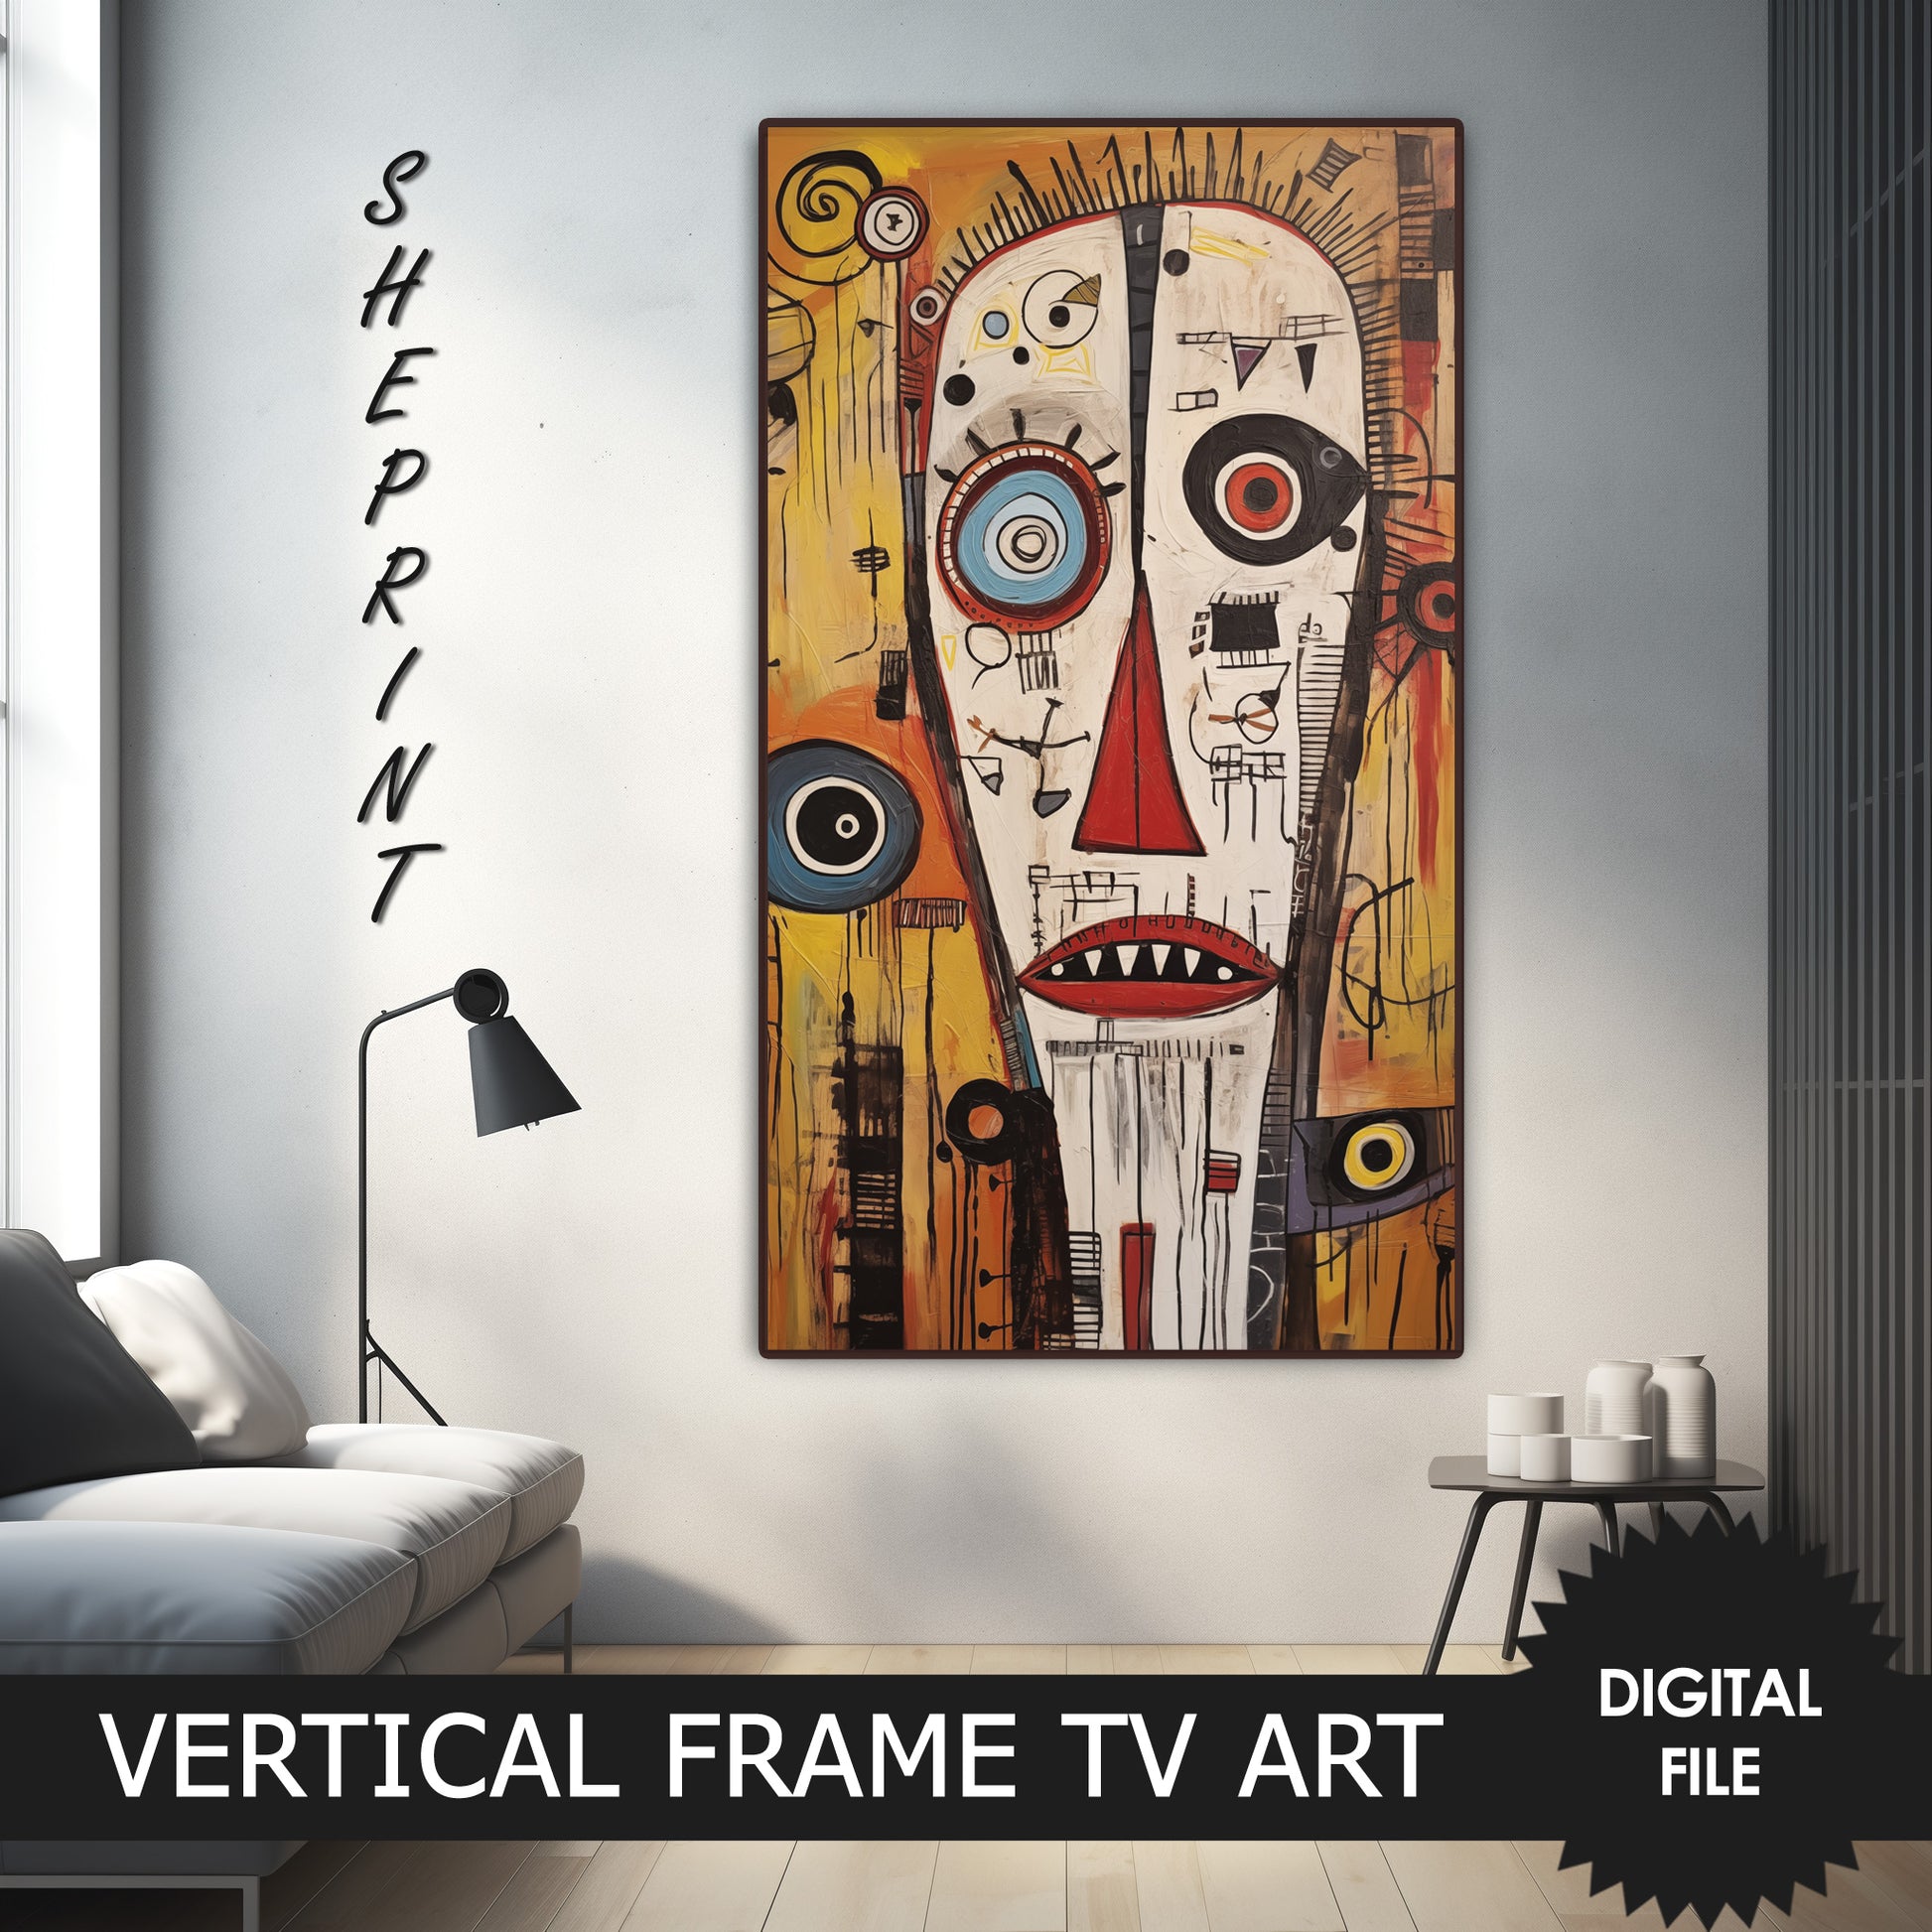 Vertical Frame TV Art, White Face Art Brut Oil Painting, Outsider Art preview on samsung Frame TV when mounted vertically